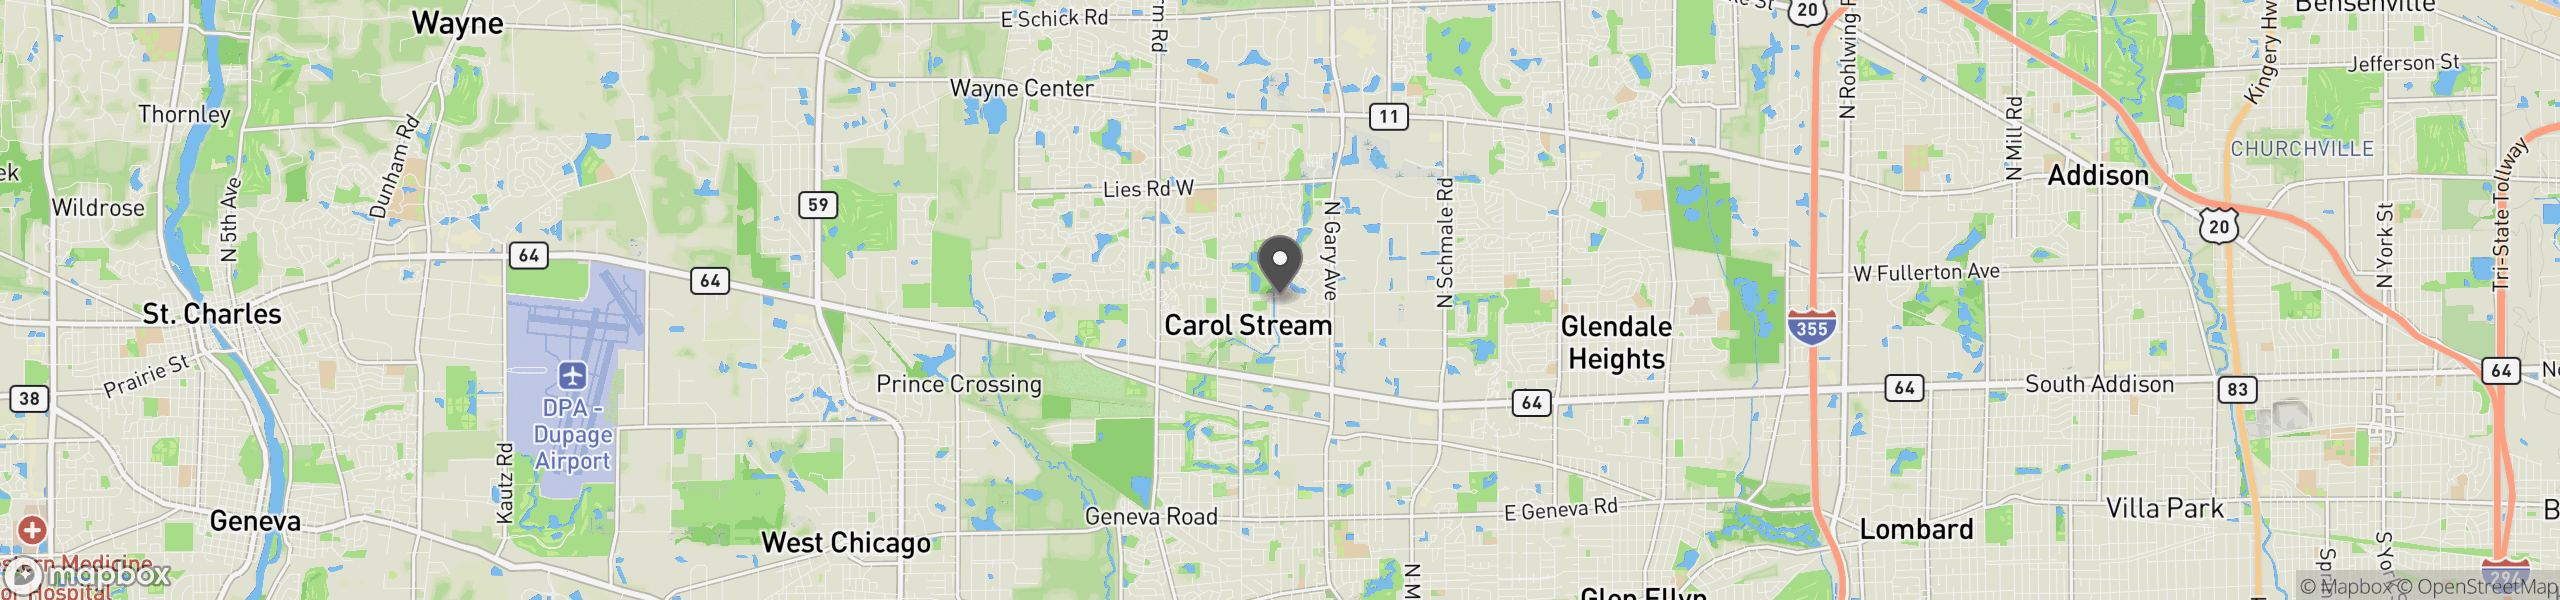 Carol Stream, IL 60188